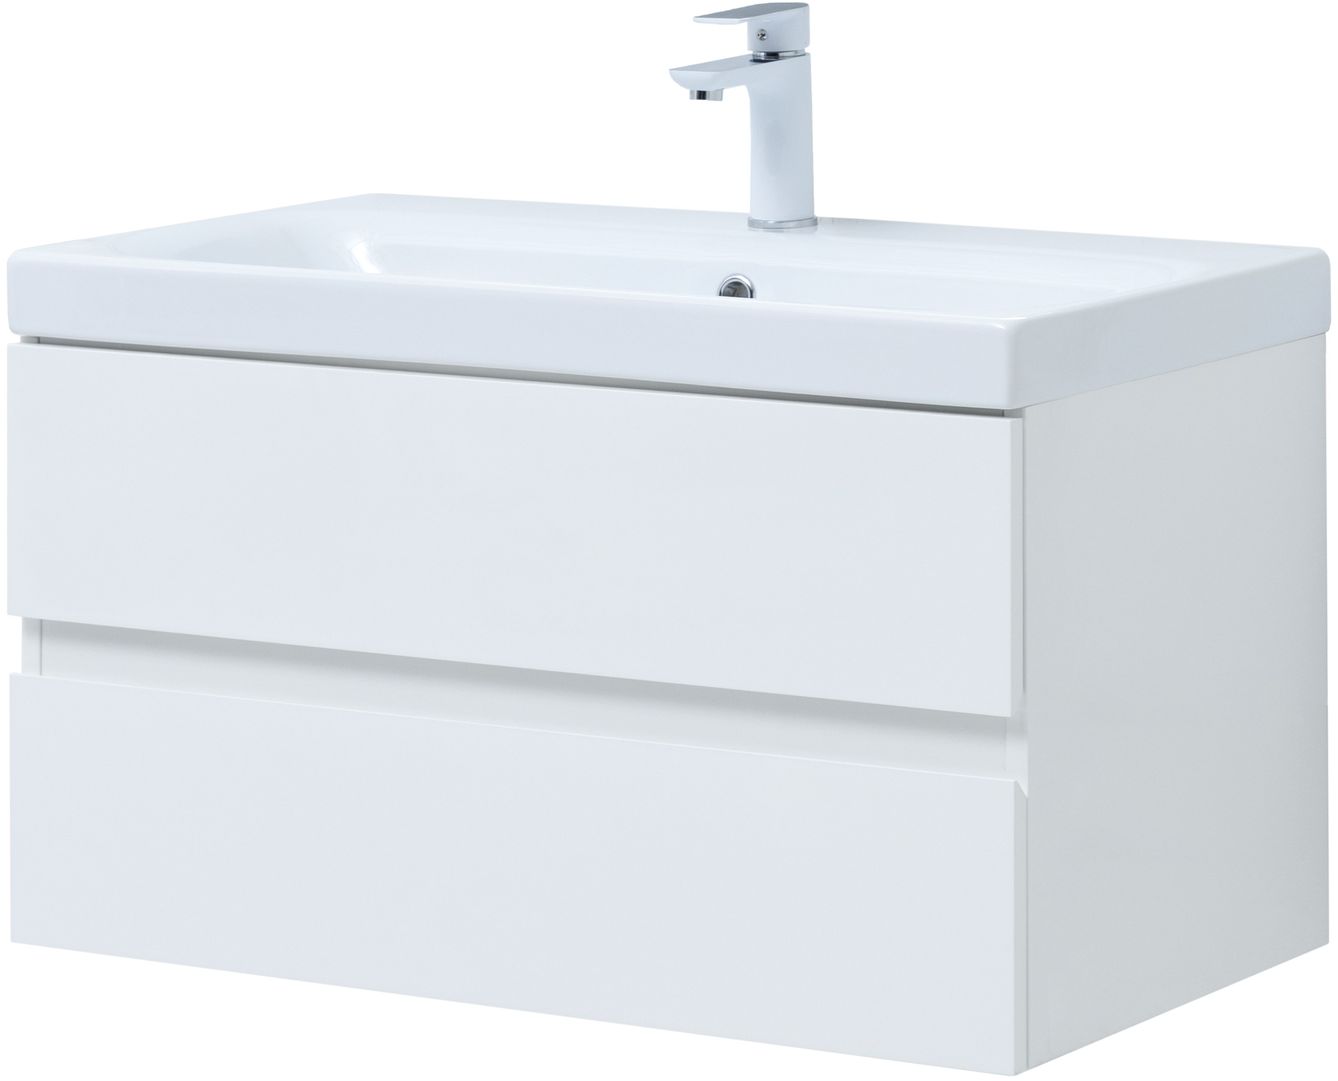 Мебель для ванной Aquanet Беркли 80 см белый глянец (2 ящика) 302351 Беркли 80 см белый глянец (2 ящика) - фото 6